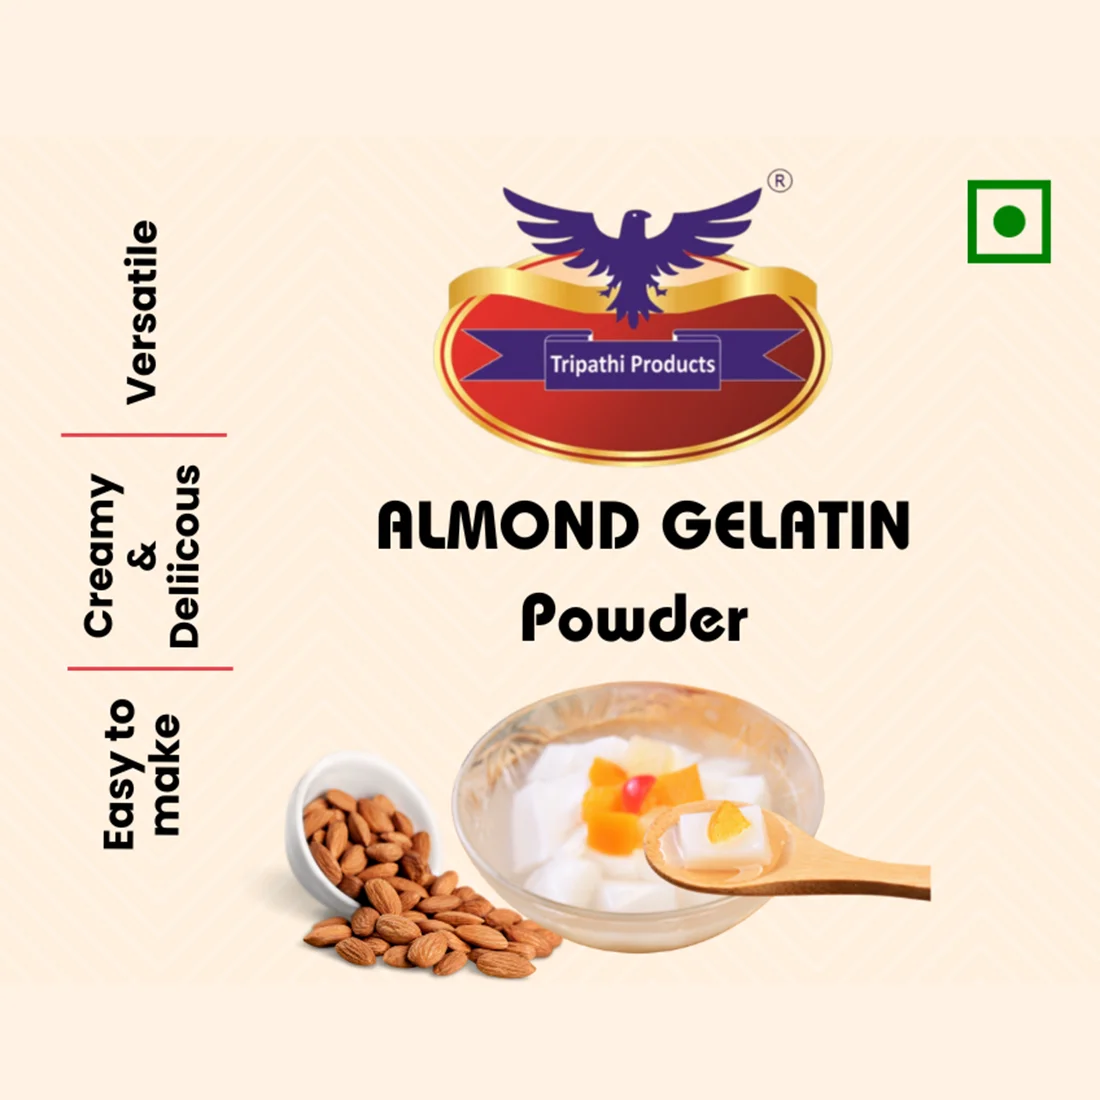 Almond flavoured Gelatin Powder